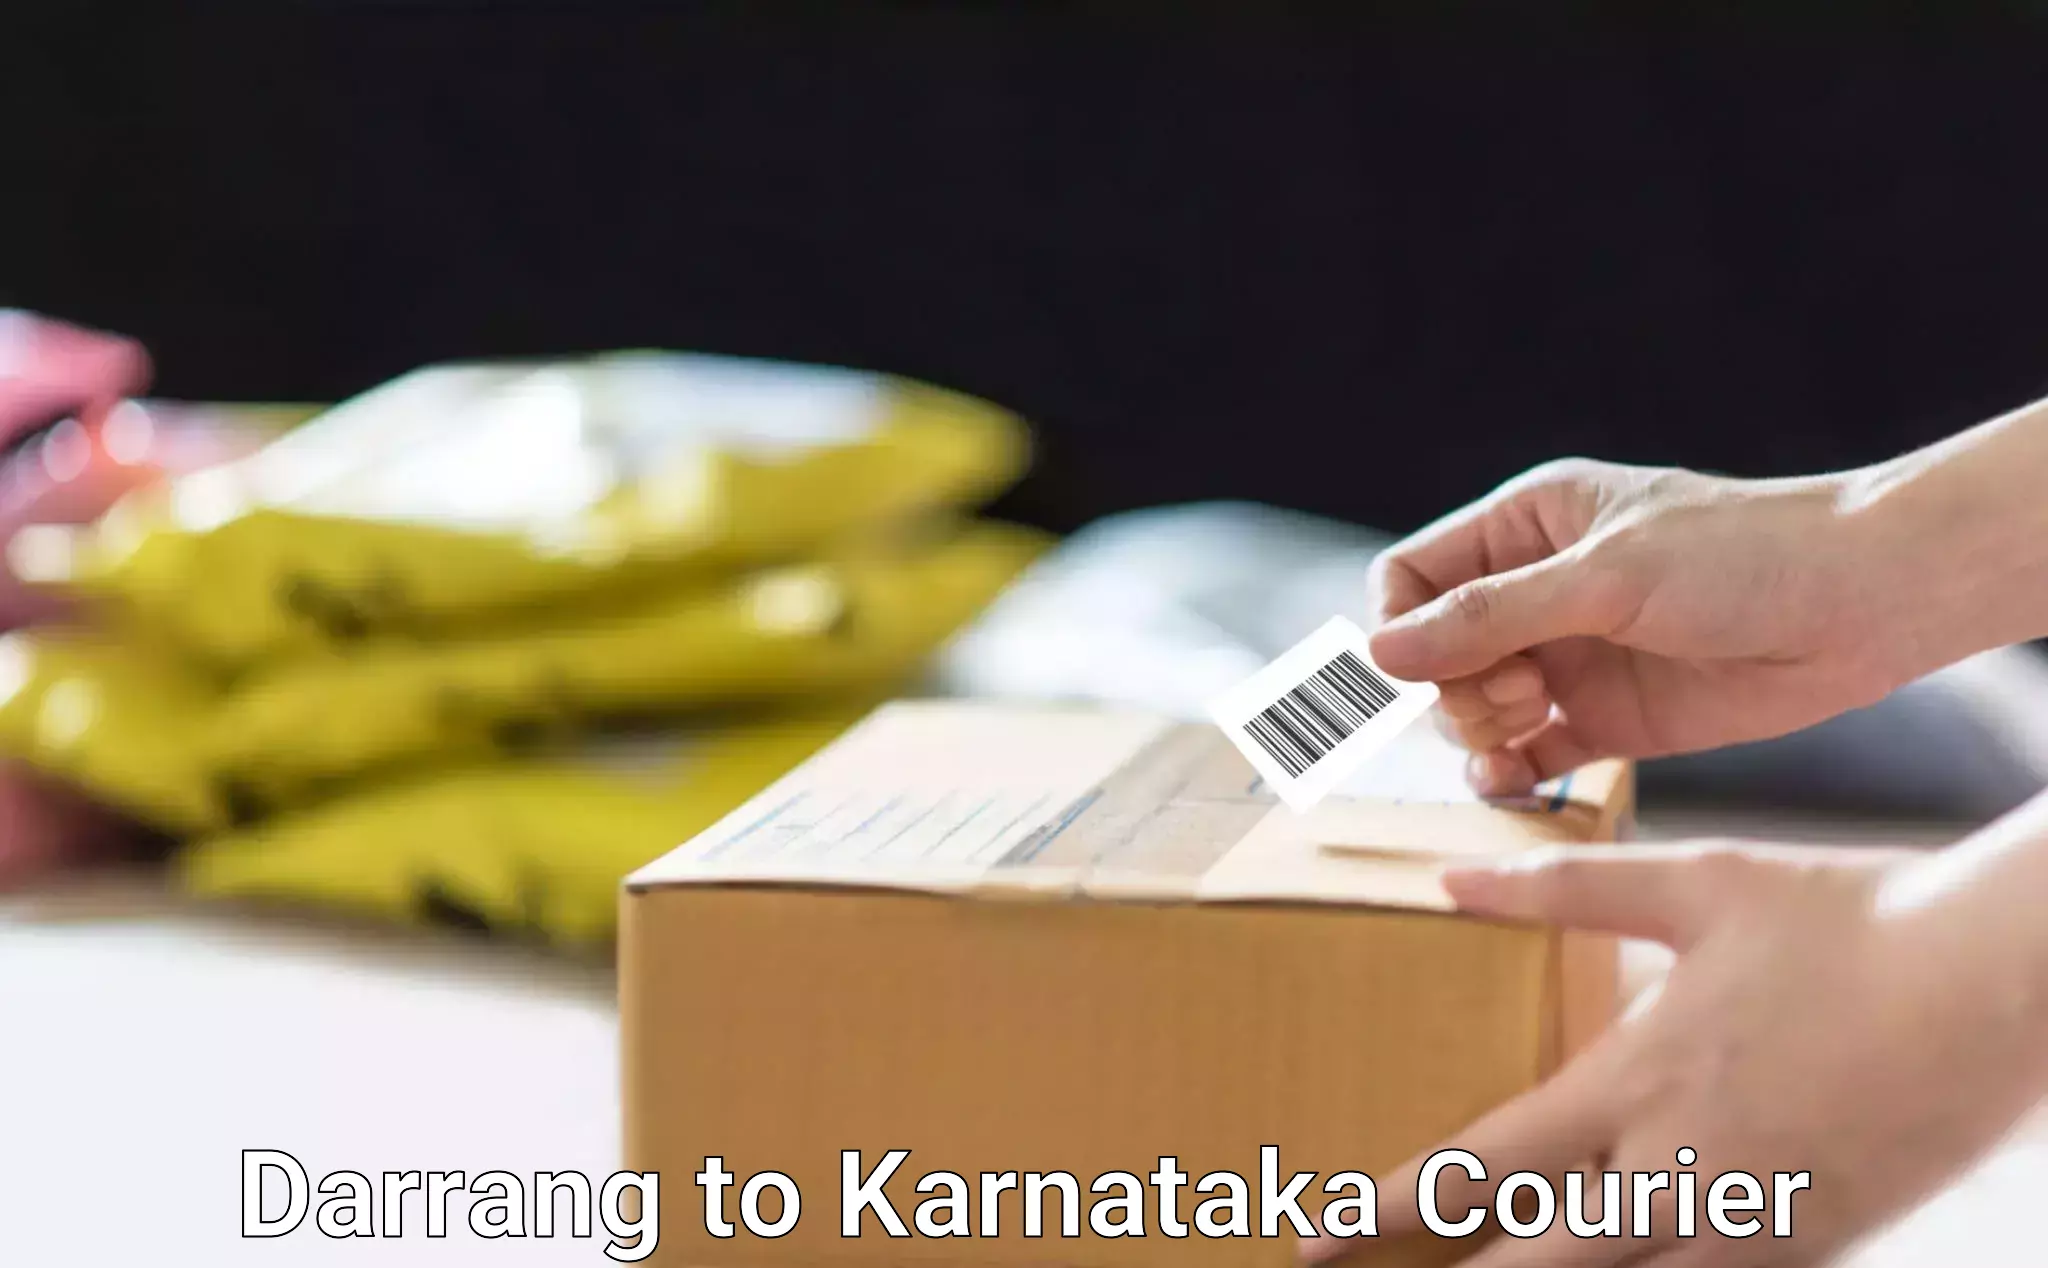 Express courier facilities Darrang to Karnataka